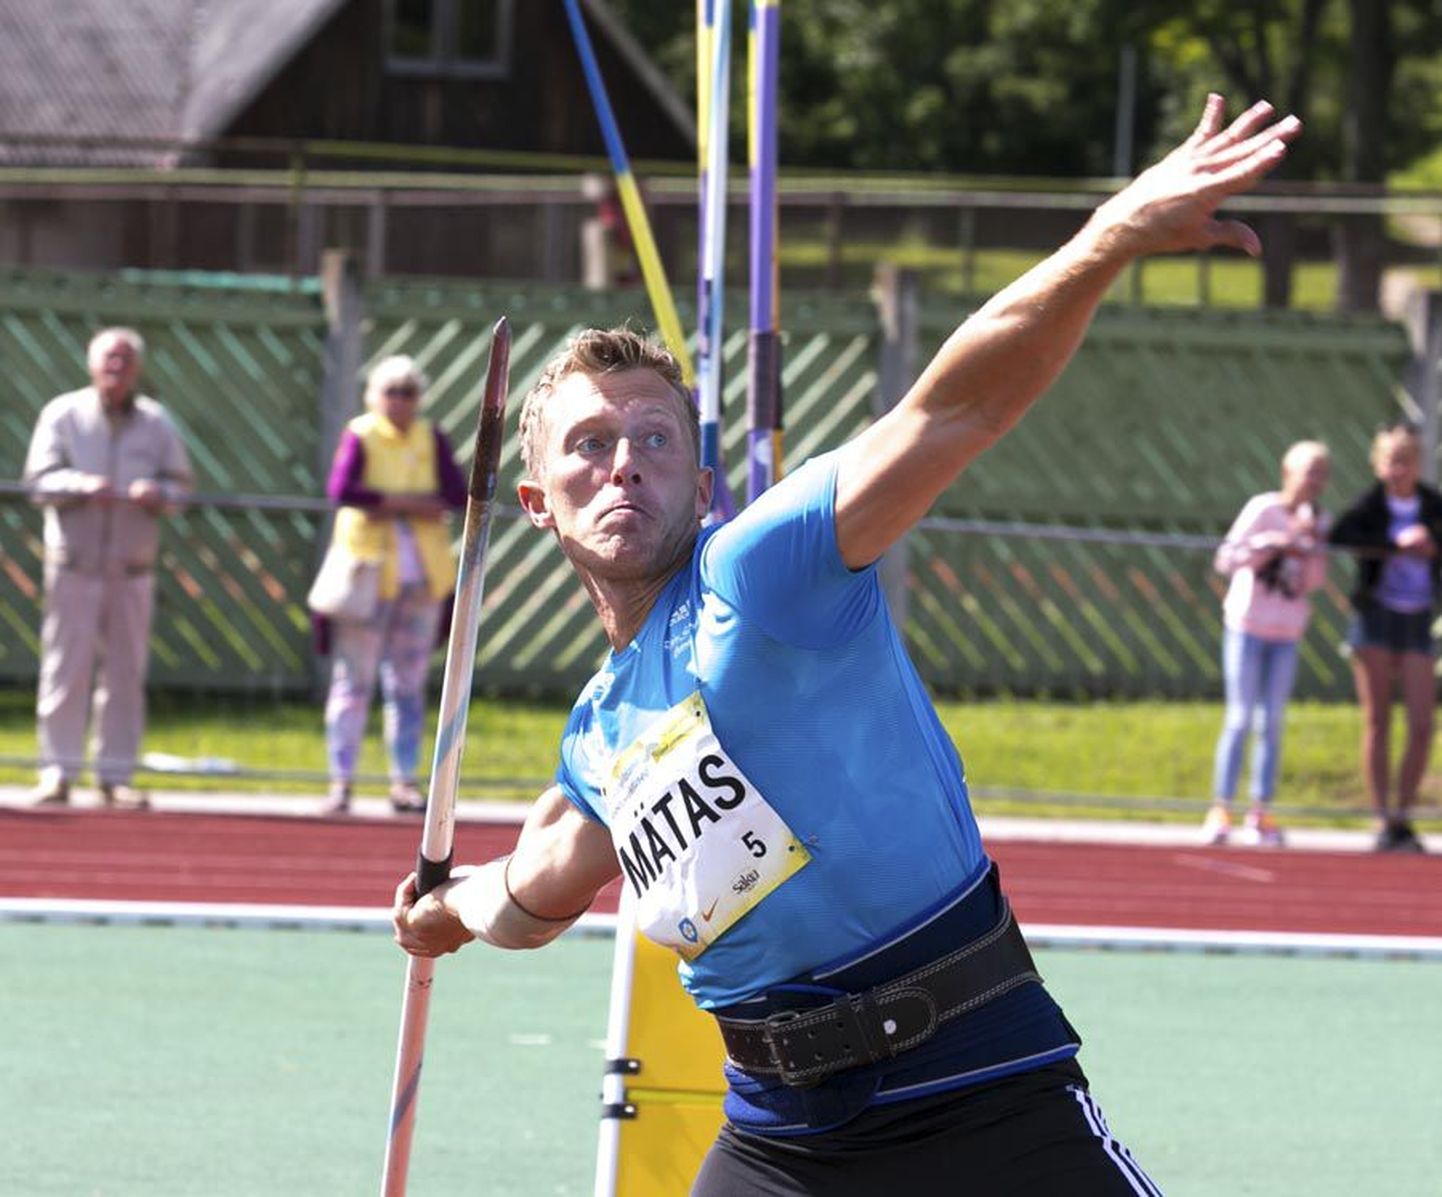 Viljandimaalt pärit odaviskaja Risto Mätas lõpetas maailmameistrivõistlused 12. kohaga. Pilt on tehtud tänavu juulikuus Viljandis Valter Kalami mälestusvõistlustel.